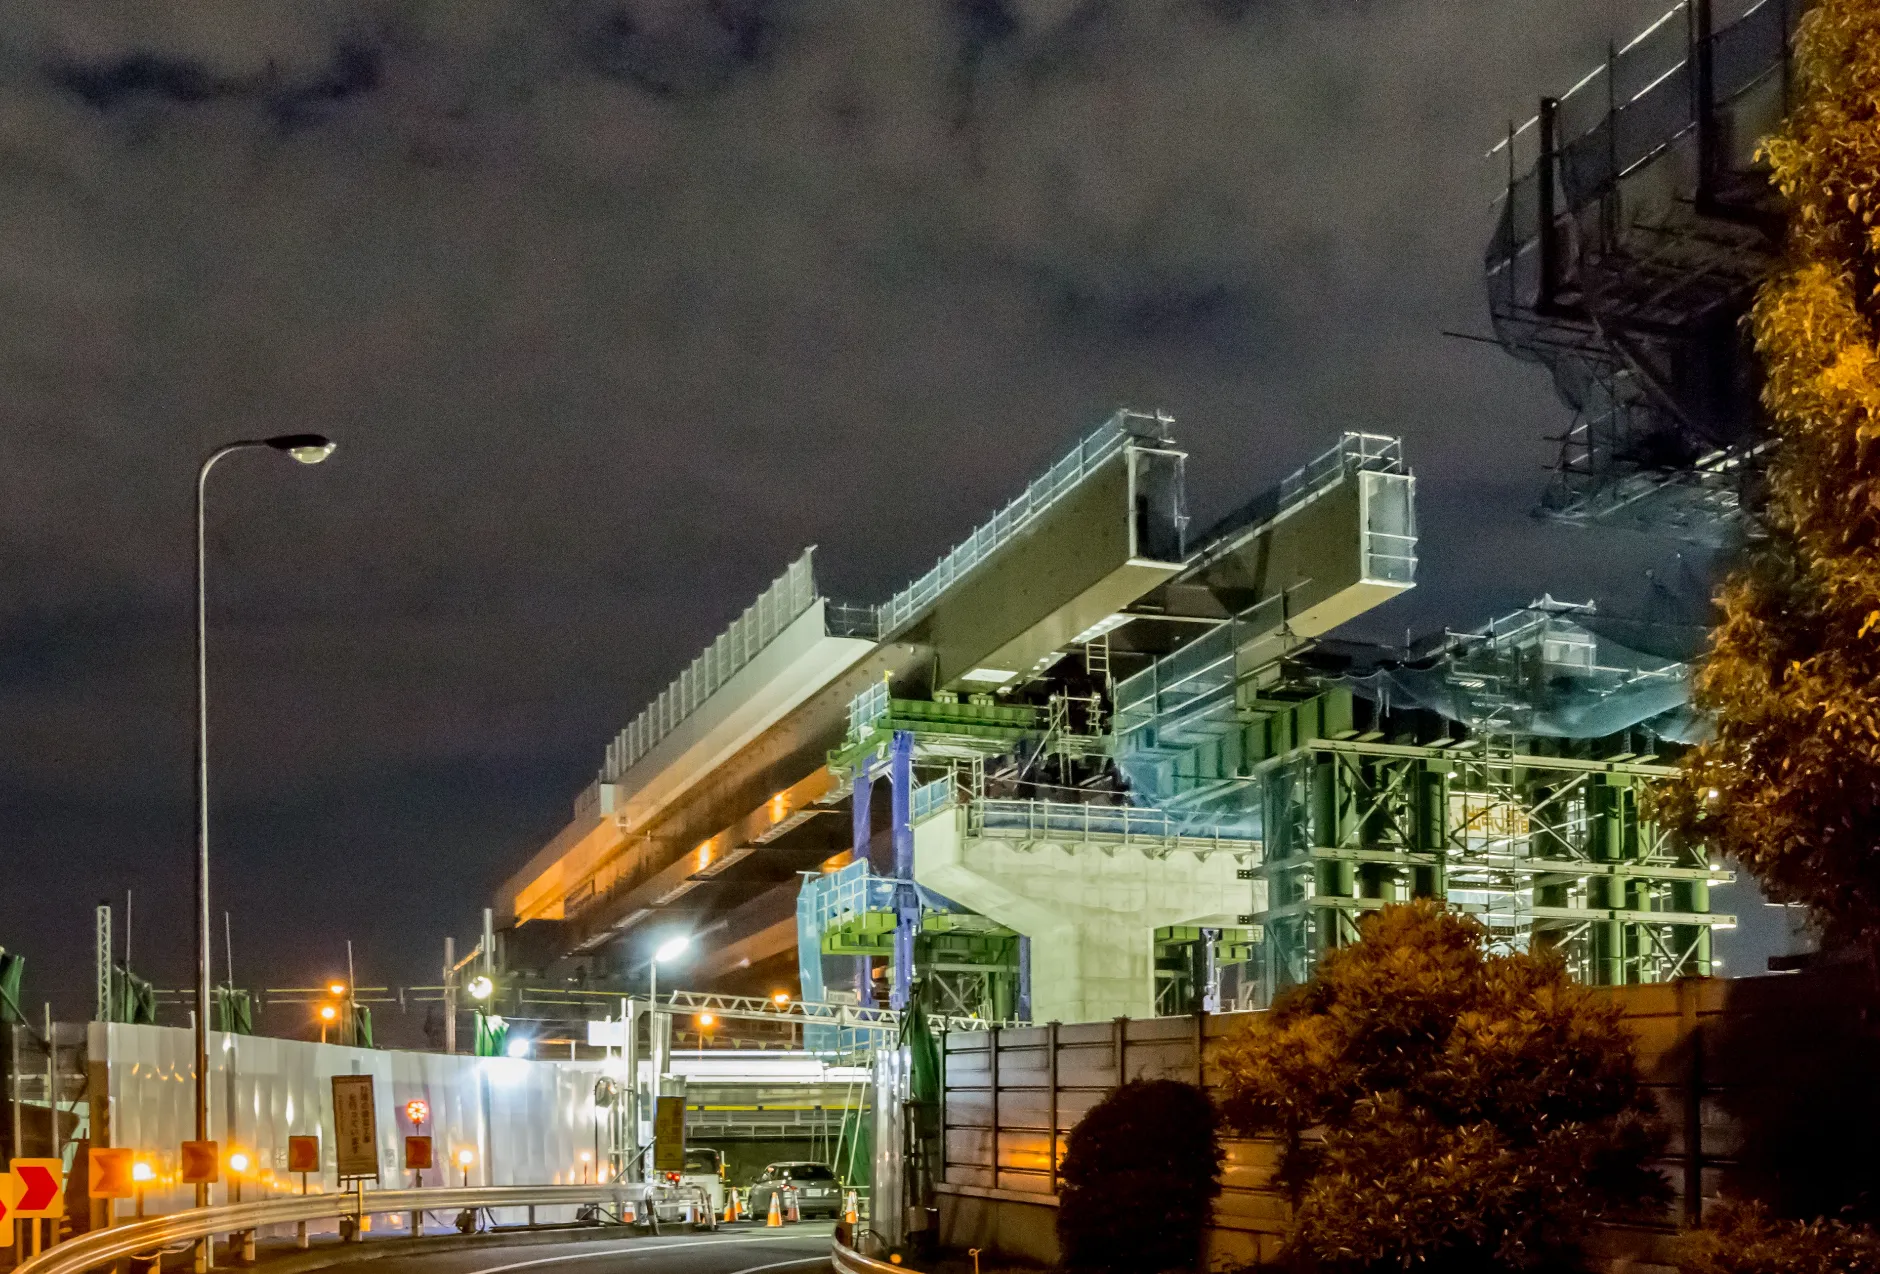 JR常磐線 金町・松戸間東京外環自動車道小山高架橋新設工事のサムネイル画像です